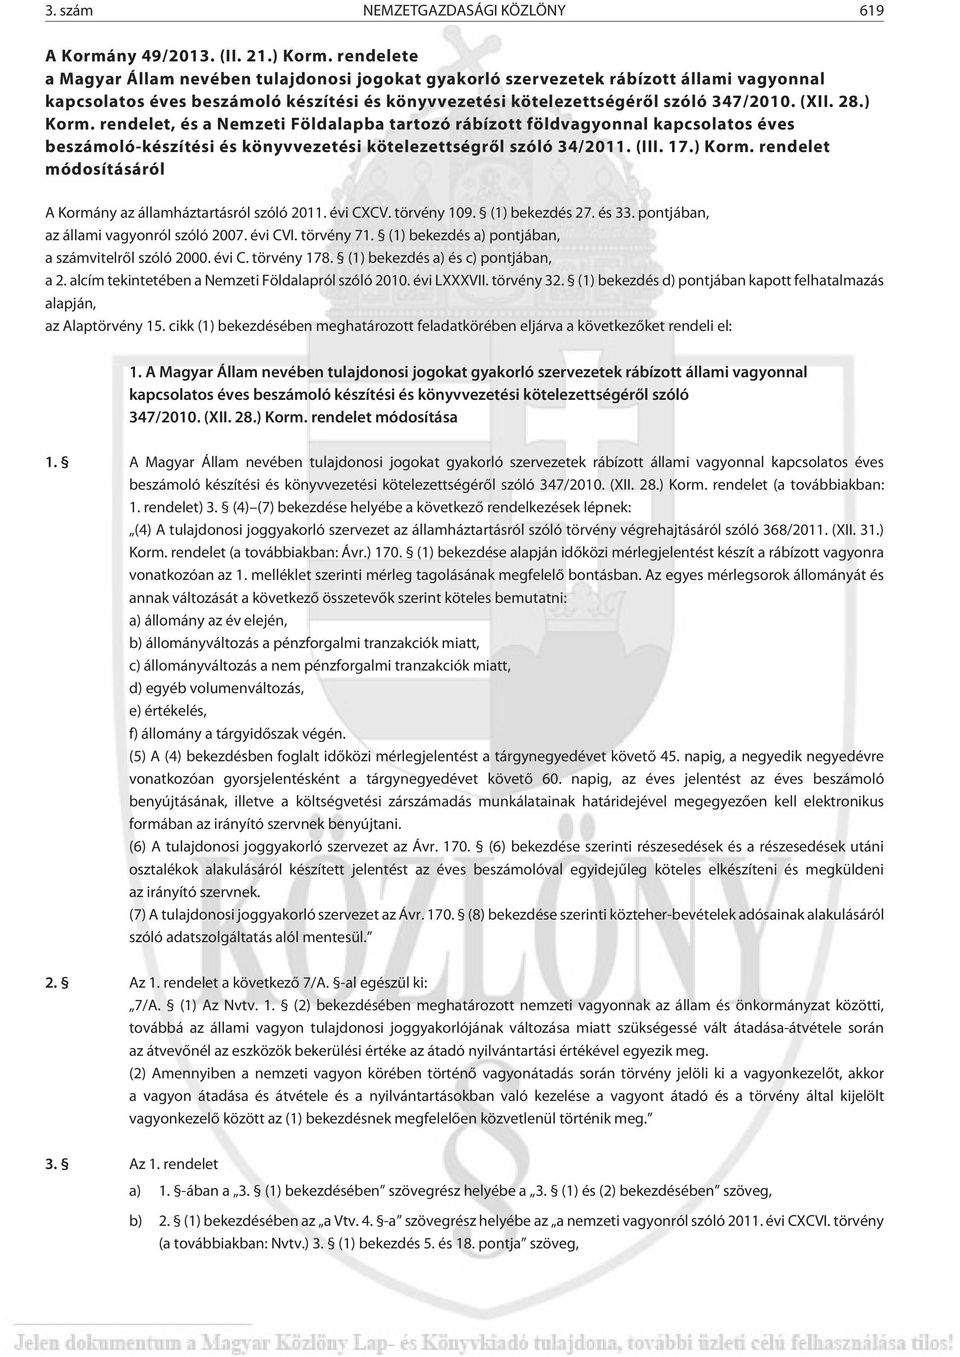 ) Korm. rendelet, és a Nemzeti Földalapba tartozó rábízott földvagyonnal kapcsolatos éves beszámoló-készítési és könyvvezetési kötelezettségrõl szóló 34/2011. (III. 17.) Korm. rendelet módosításáról A Kormány az államháztartásról szóló 2011.